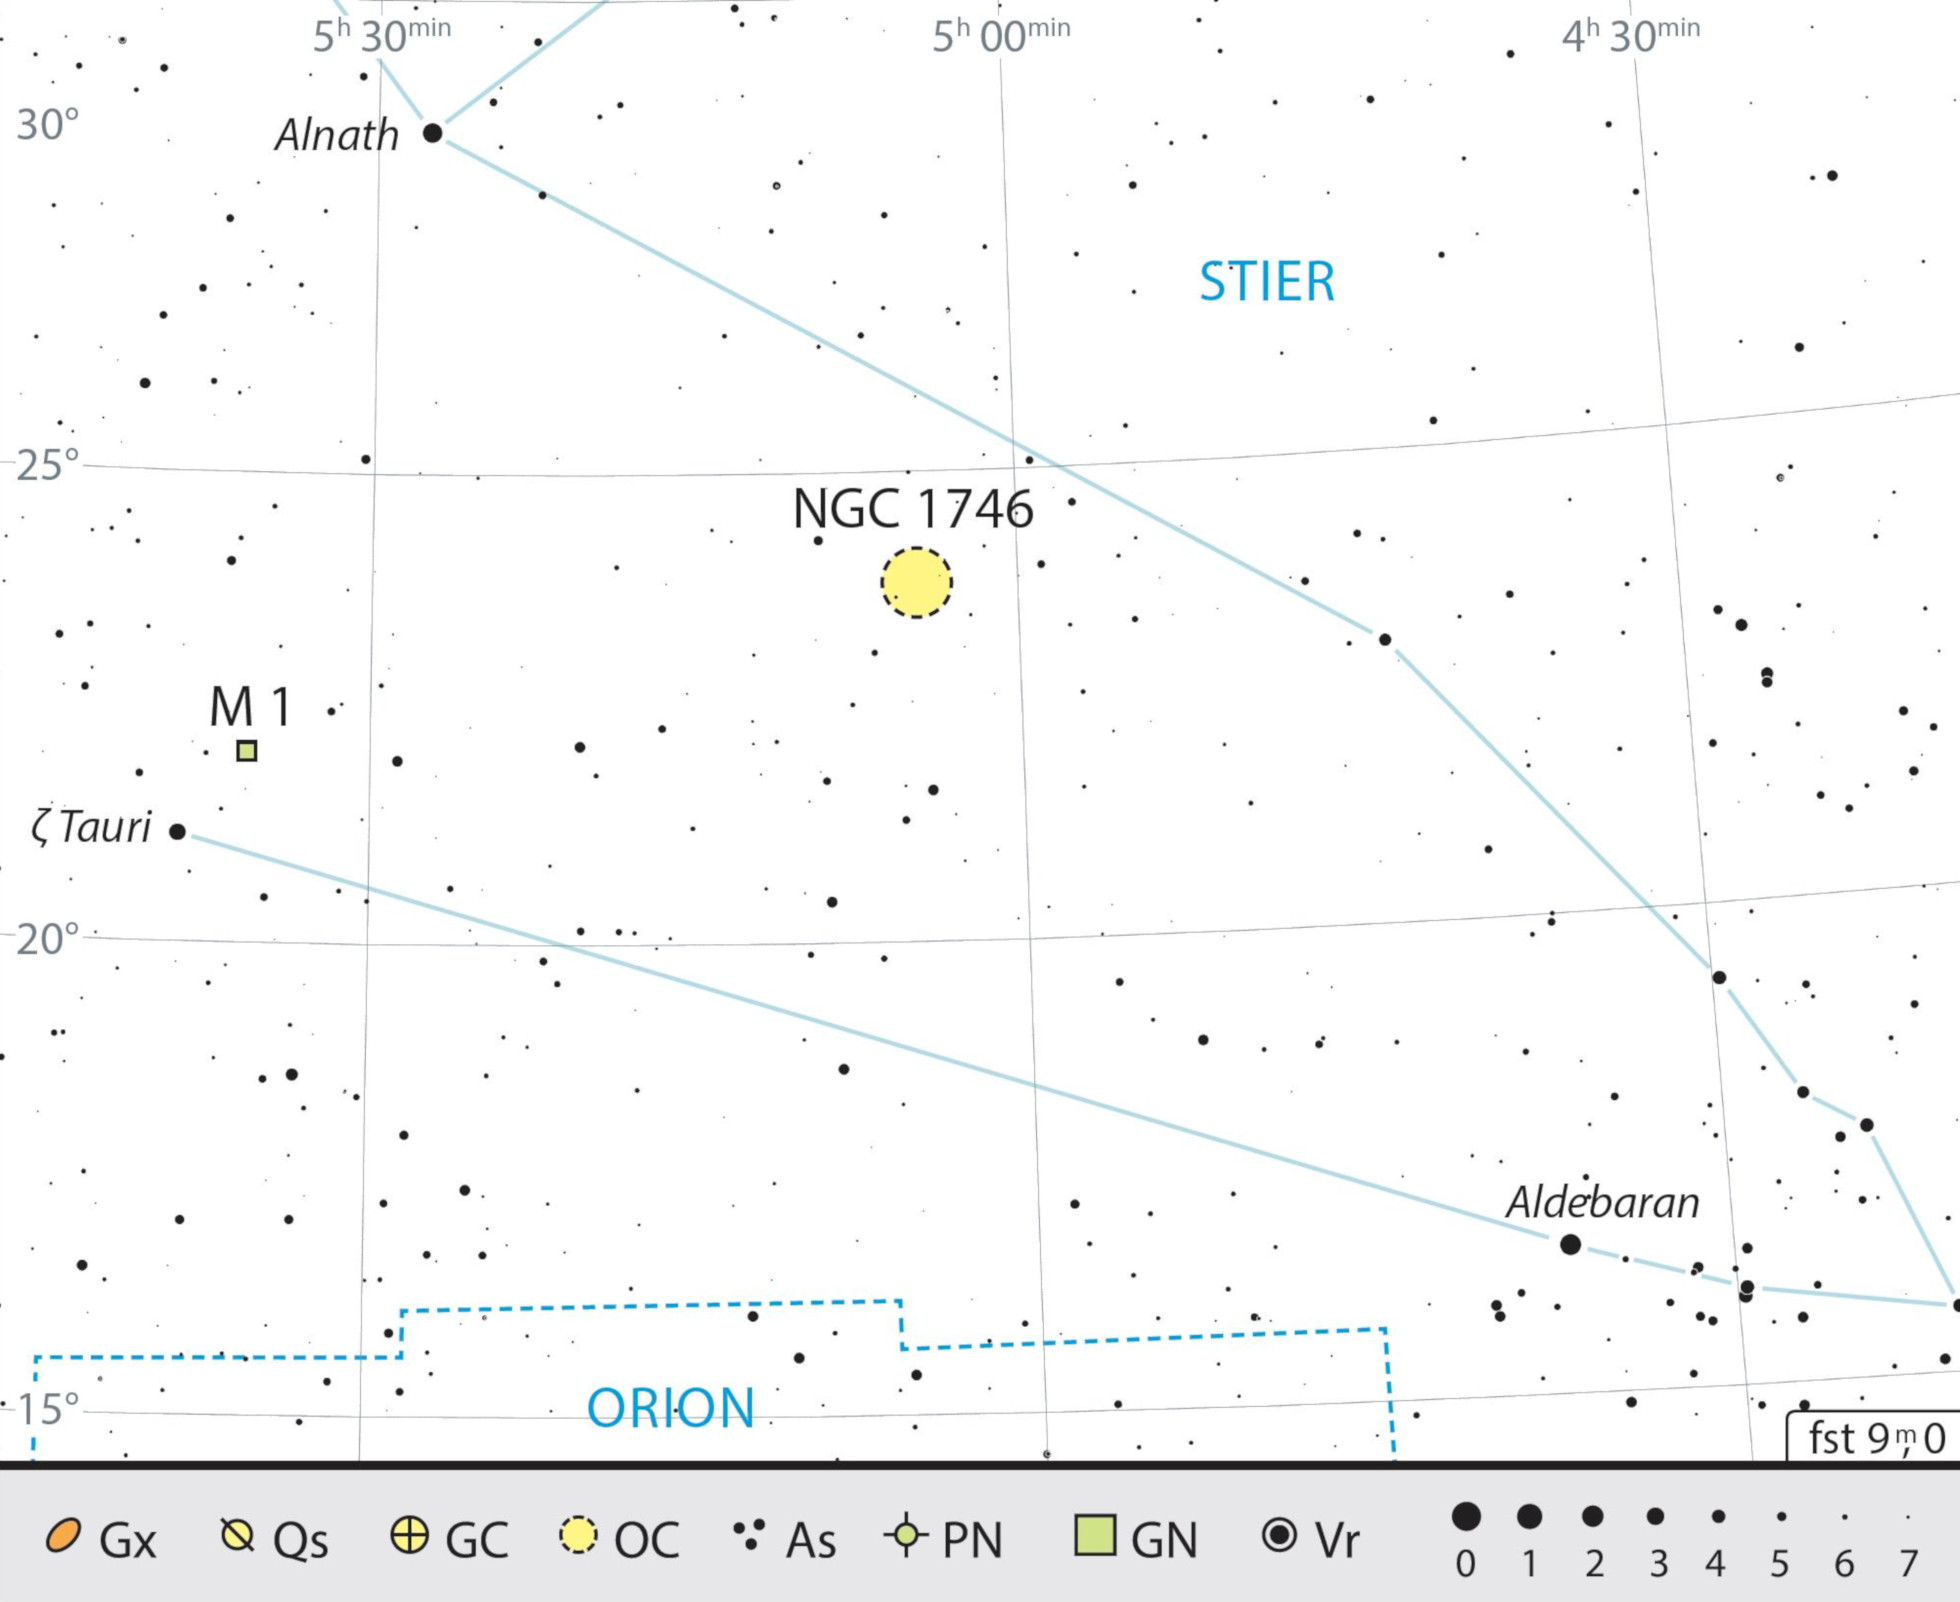 Mappa celeste per Messier 1 nella costellazione del Toro. J. Scholten